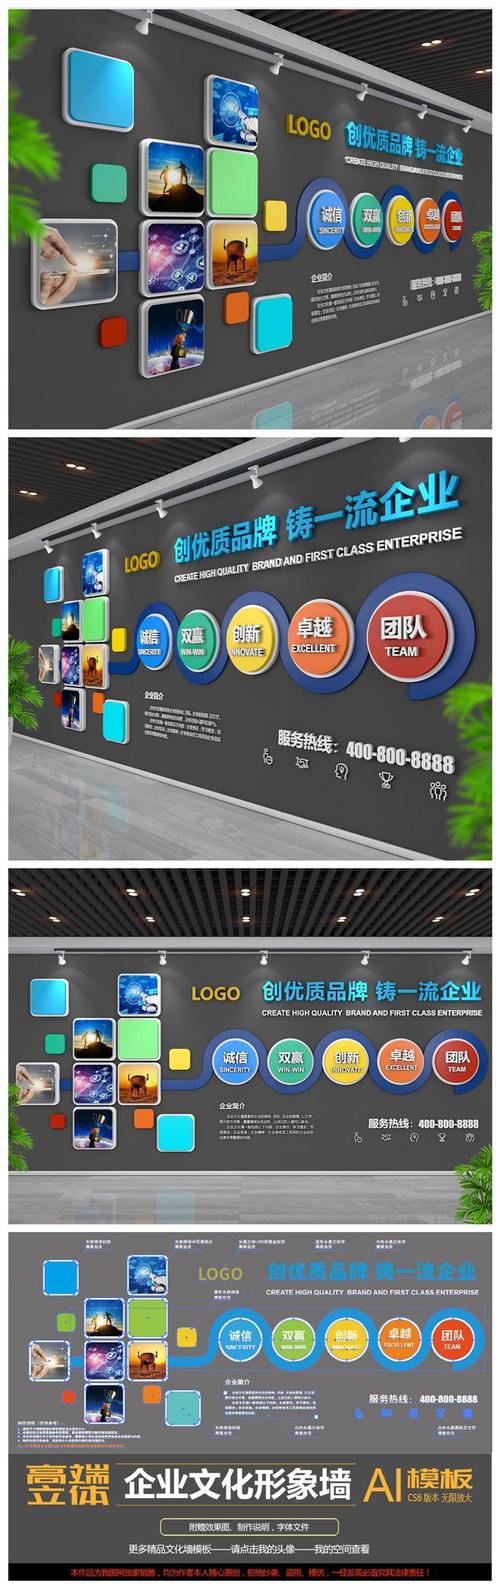 杨梅HQ环球体育app下载红艺术教育(杨红梅艺术)